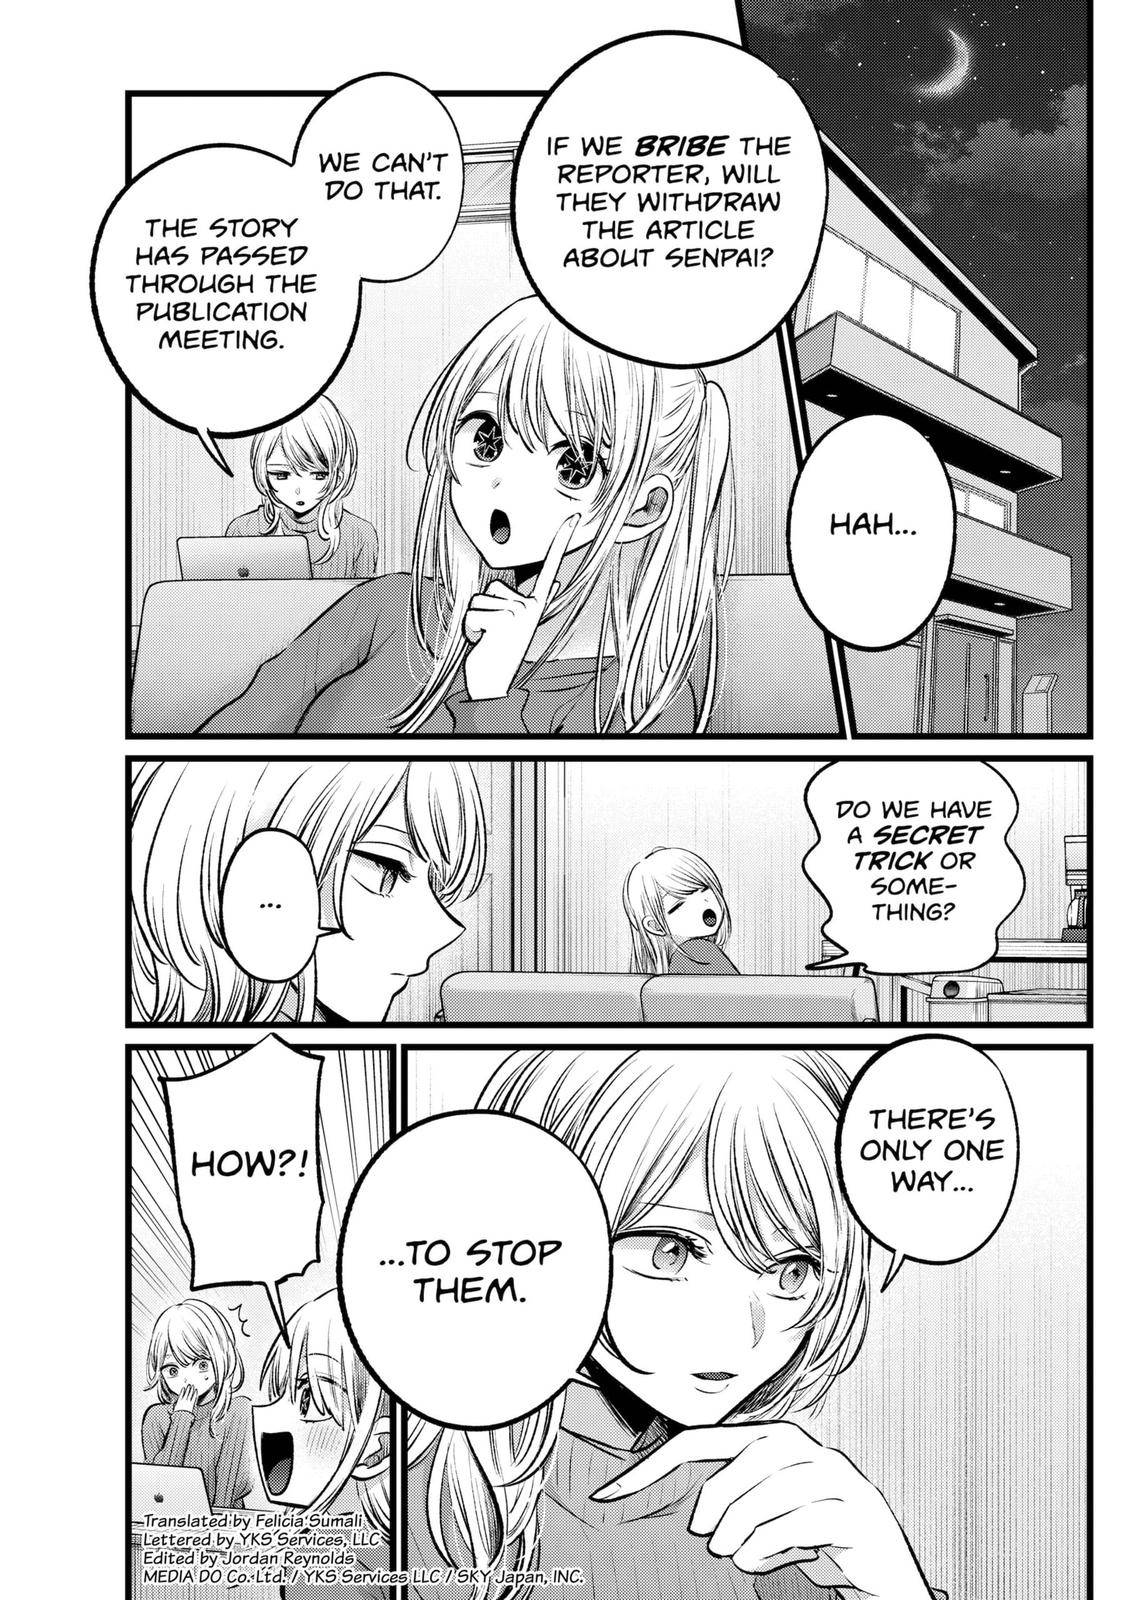 Oshi no ko, Chapter 117 - Oshi no ko Manga Online